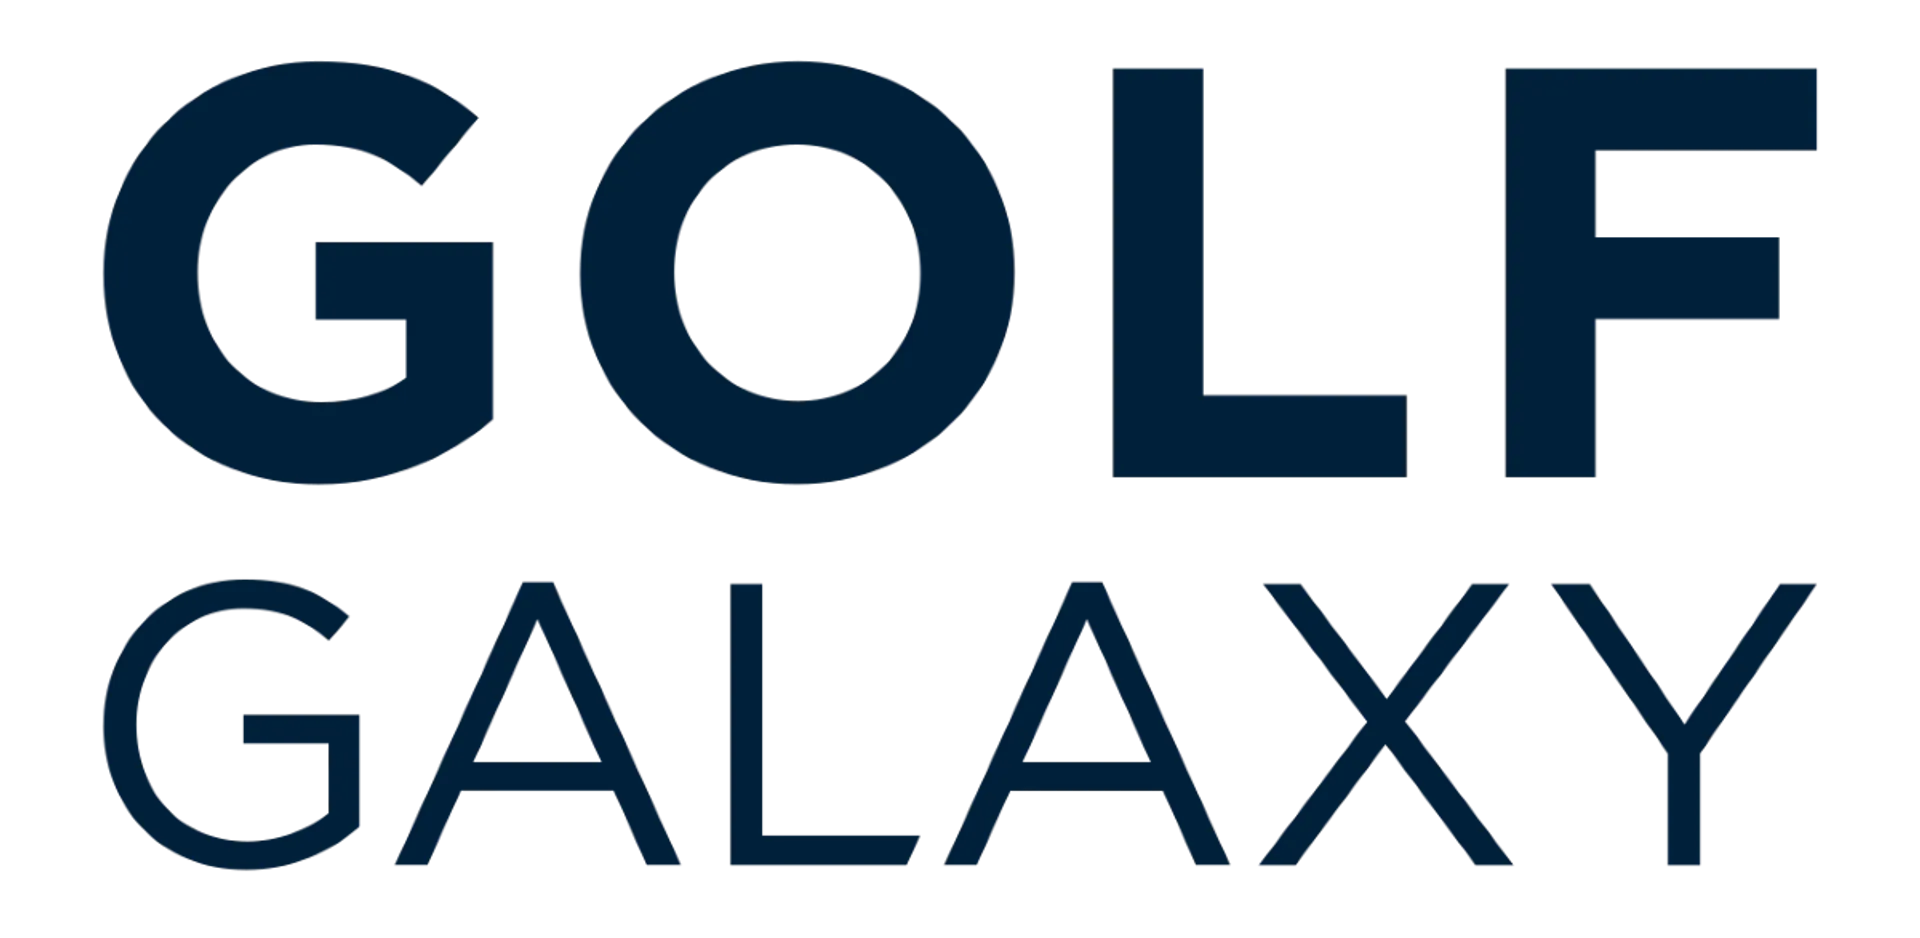 GOLF GALAXY logo current weekly ad